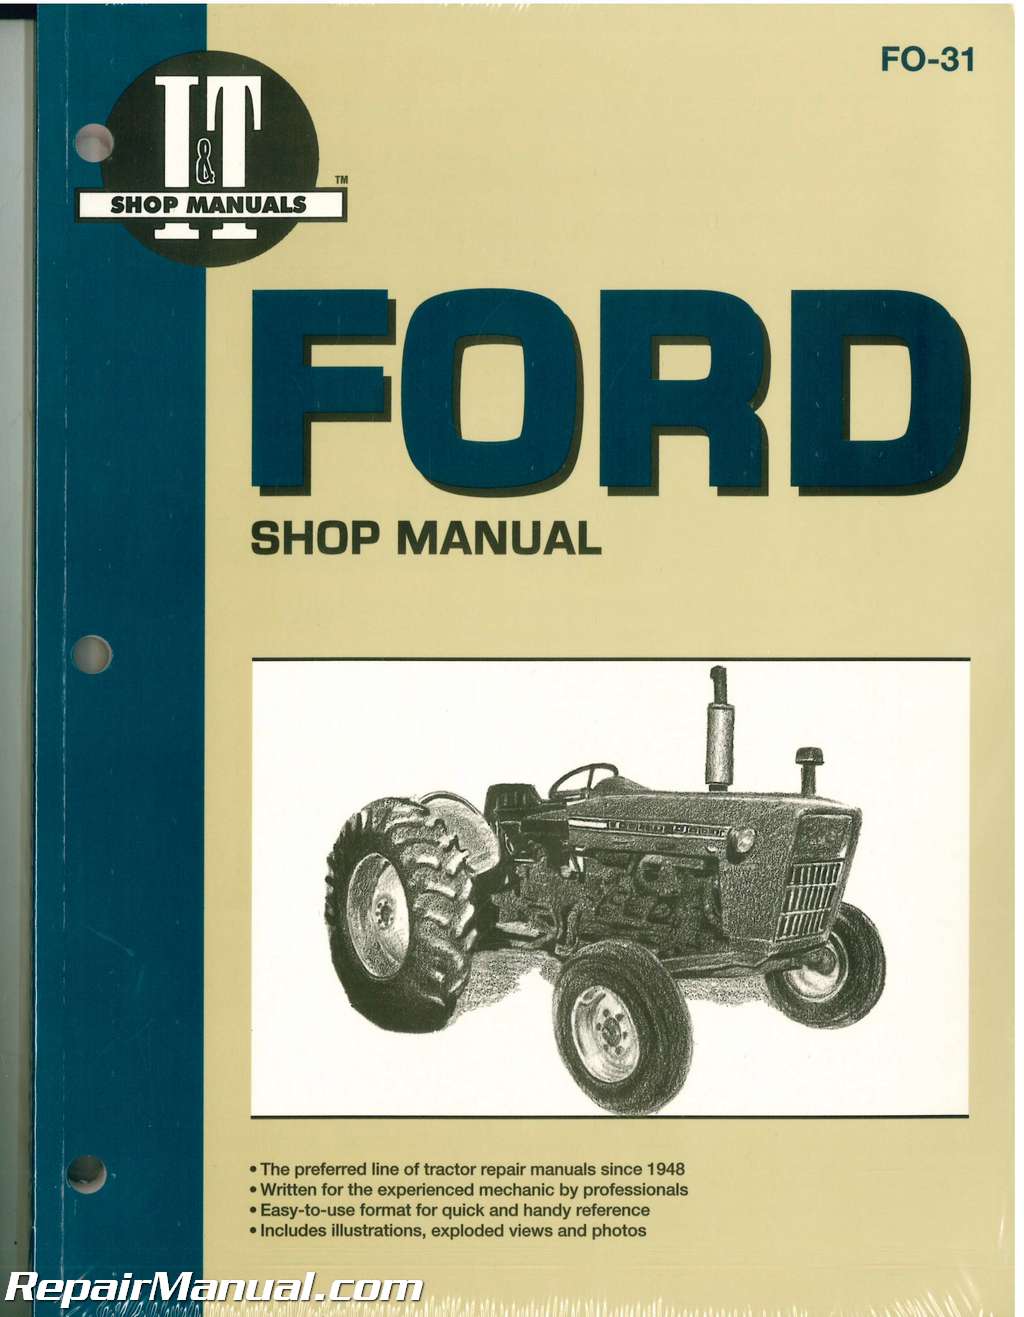 Ford 3000 tractor repair manual free